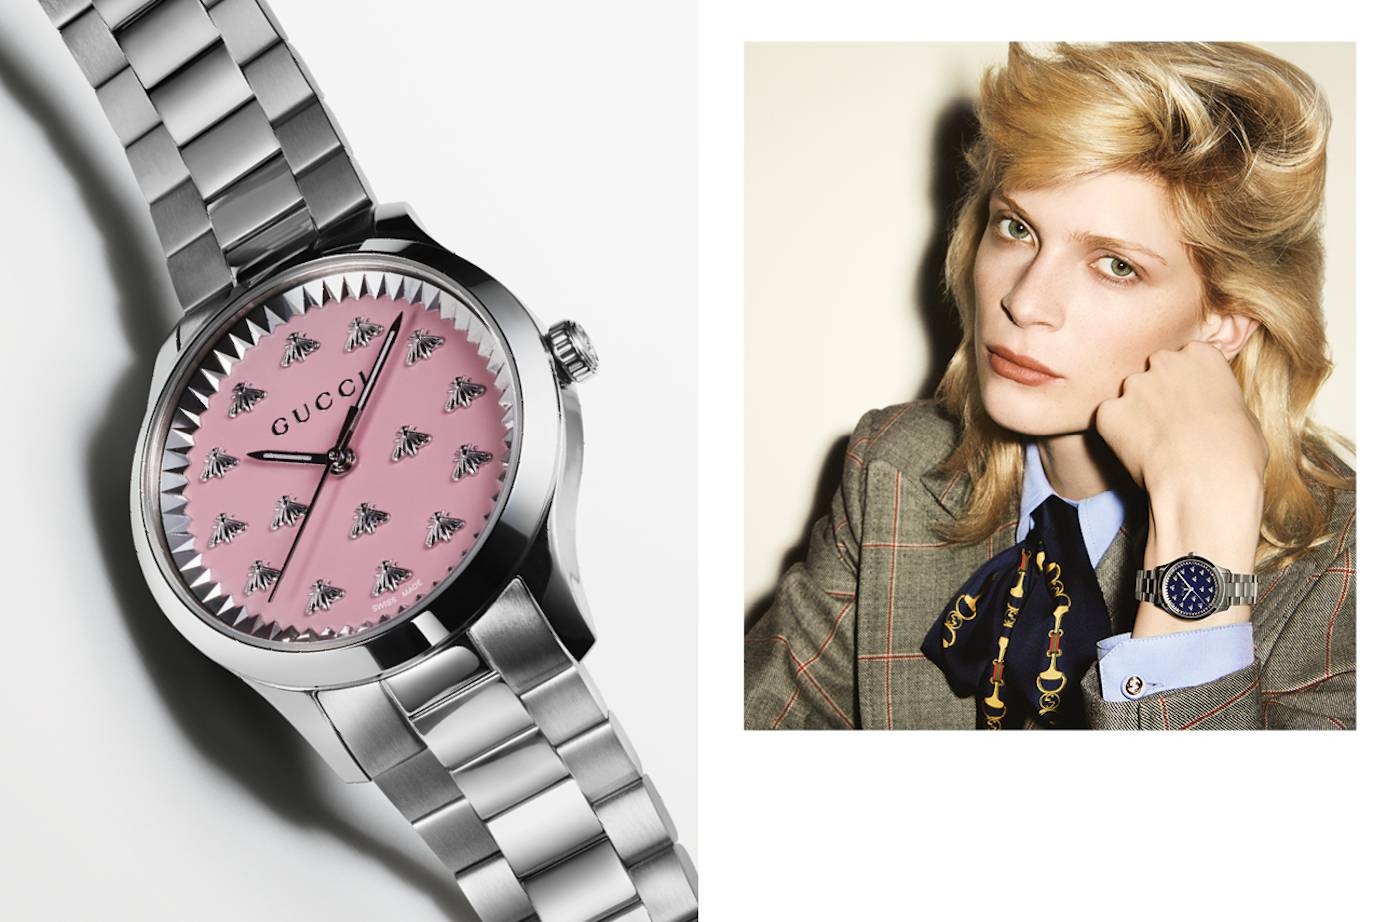 Gucci presenta nueva campaña de relojes y joyas